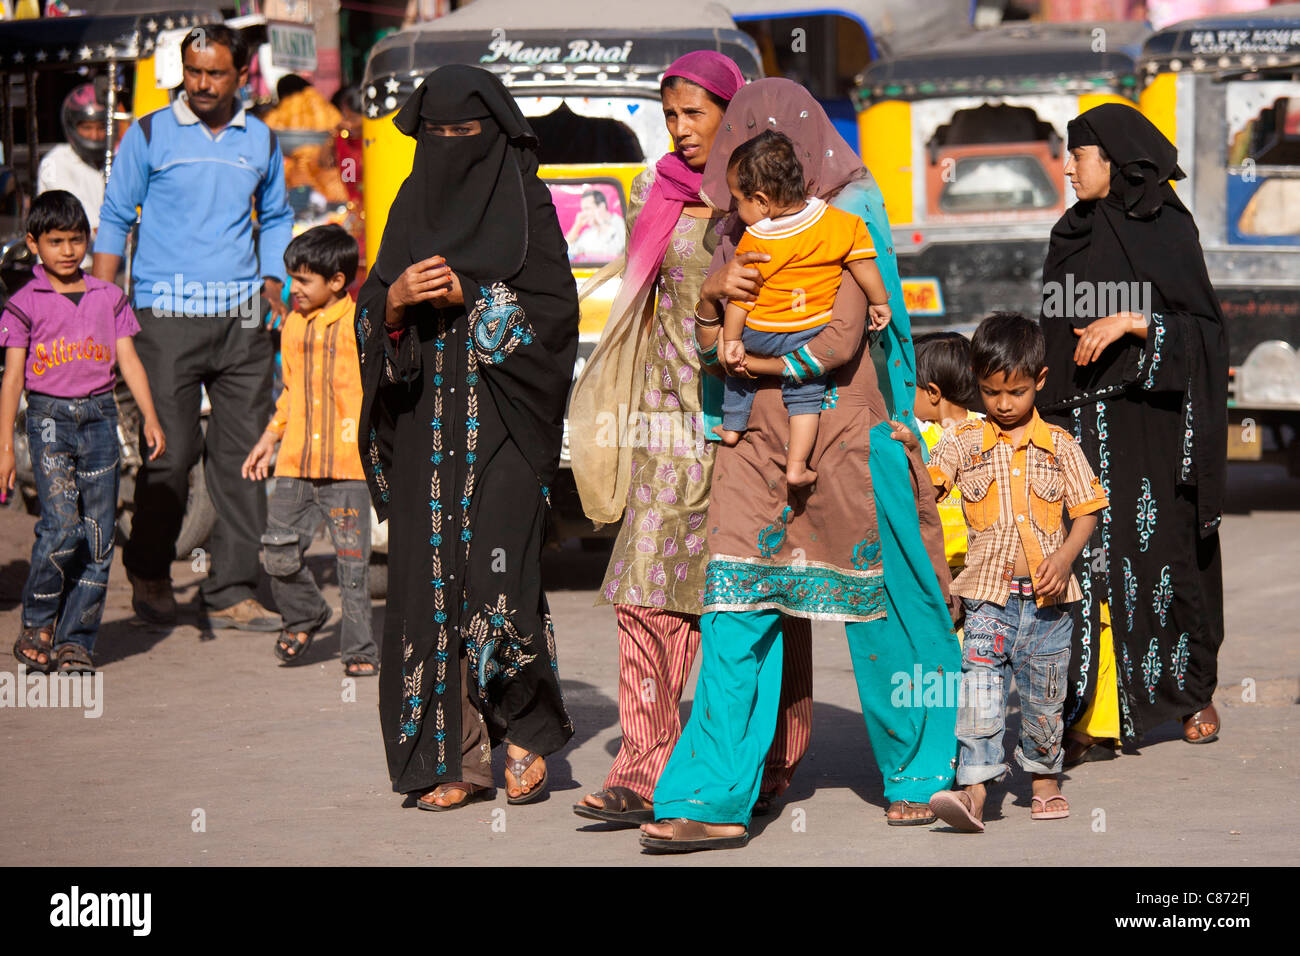 Crowded street scene Muslim people at Sardar Market at Girdikot, Jodhpur, Rajasthan, Northern India Stock Photo